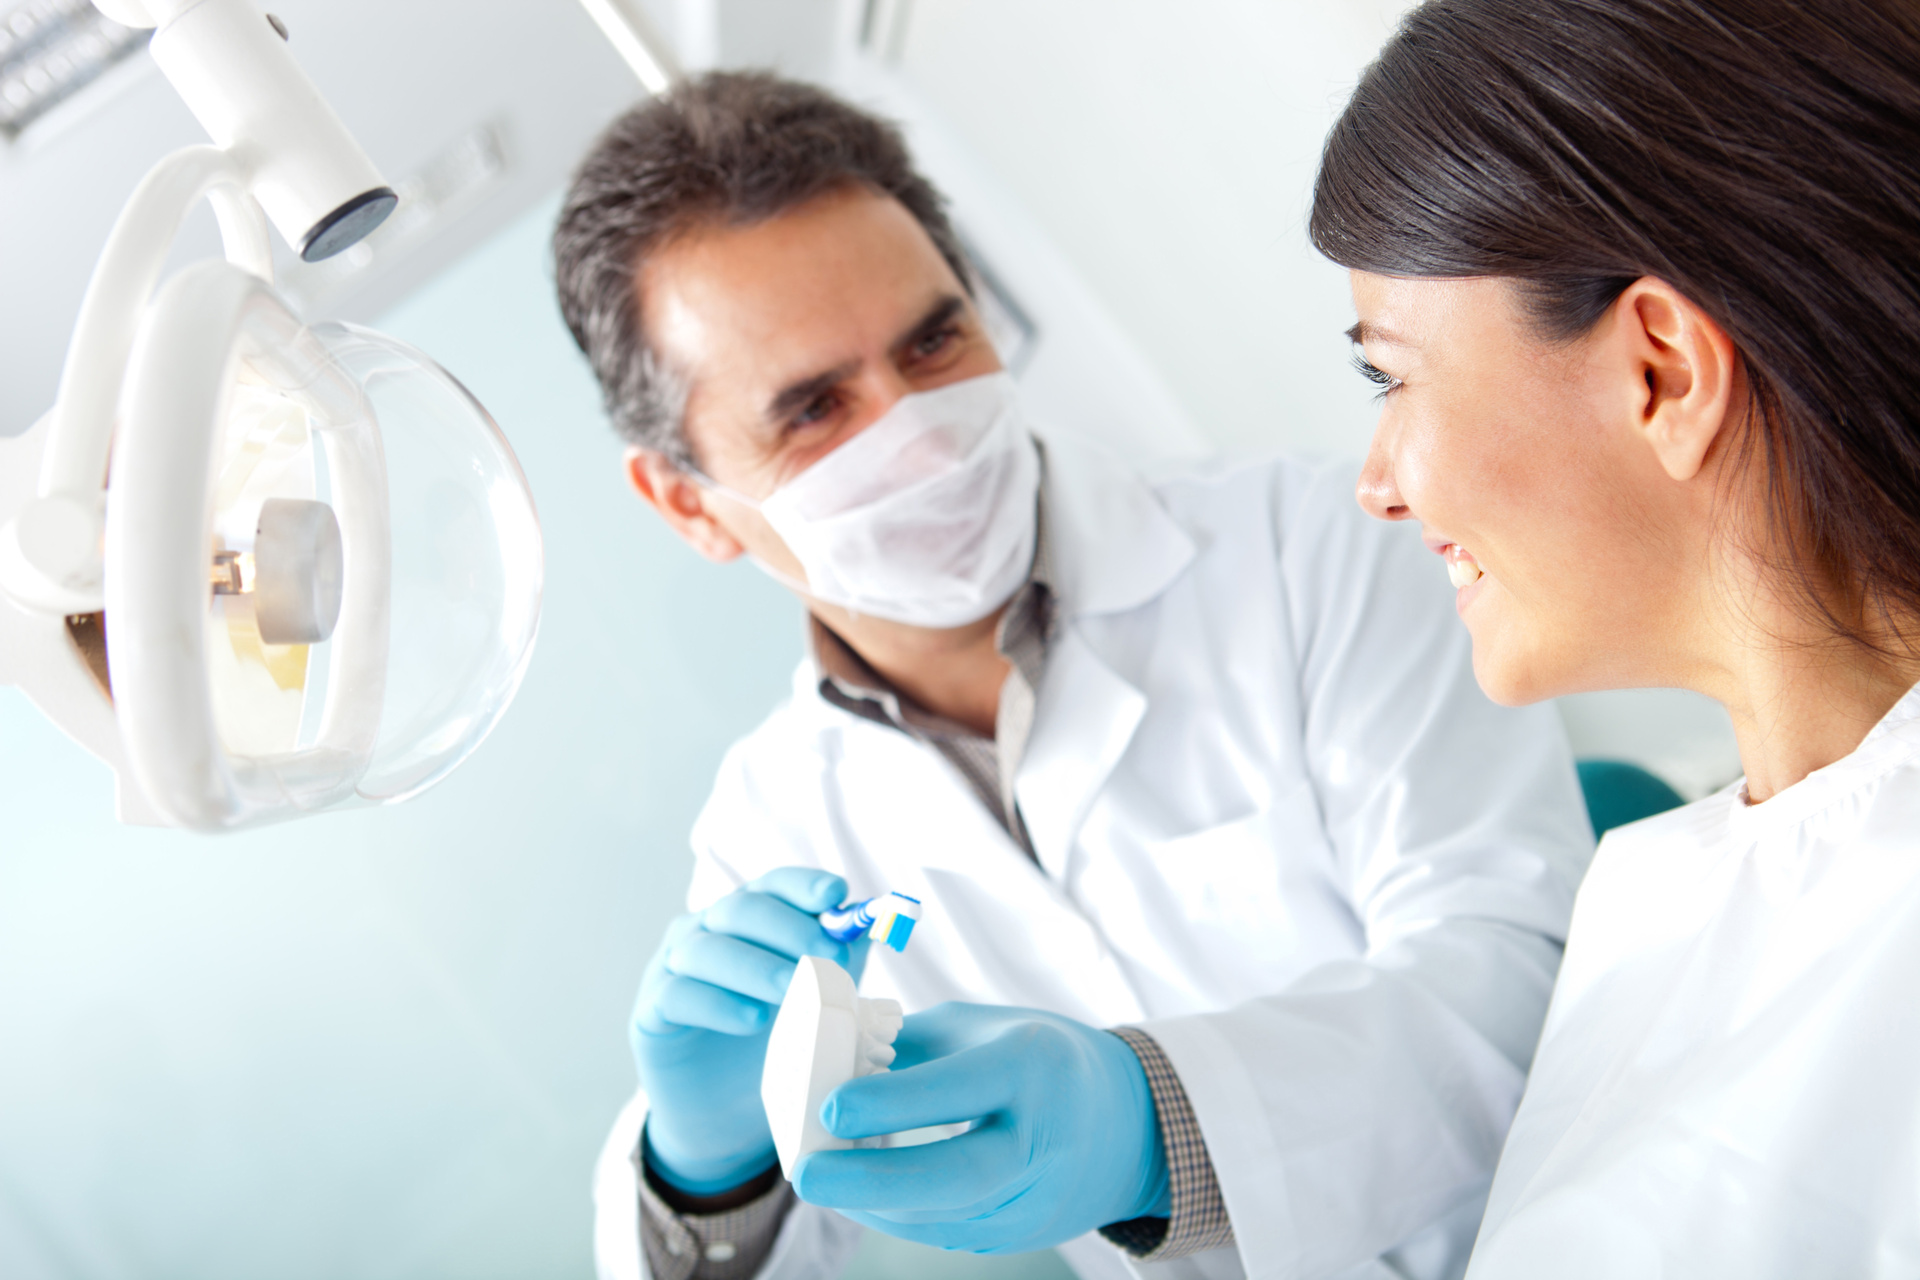 اعراض صداع الاسنان وطرق علاجه بالذهاب لطبيب الاسنان